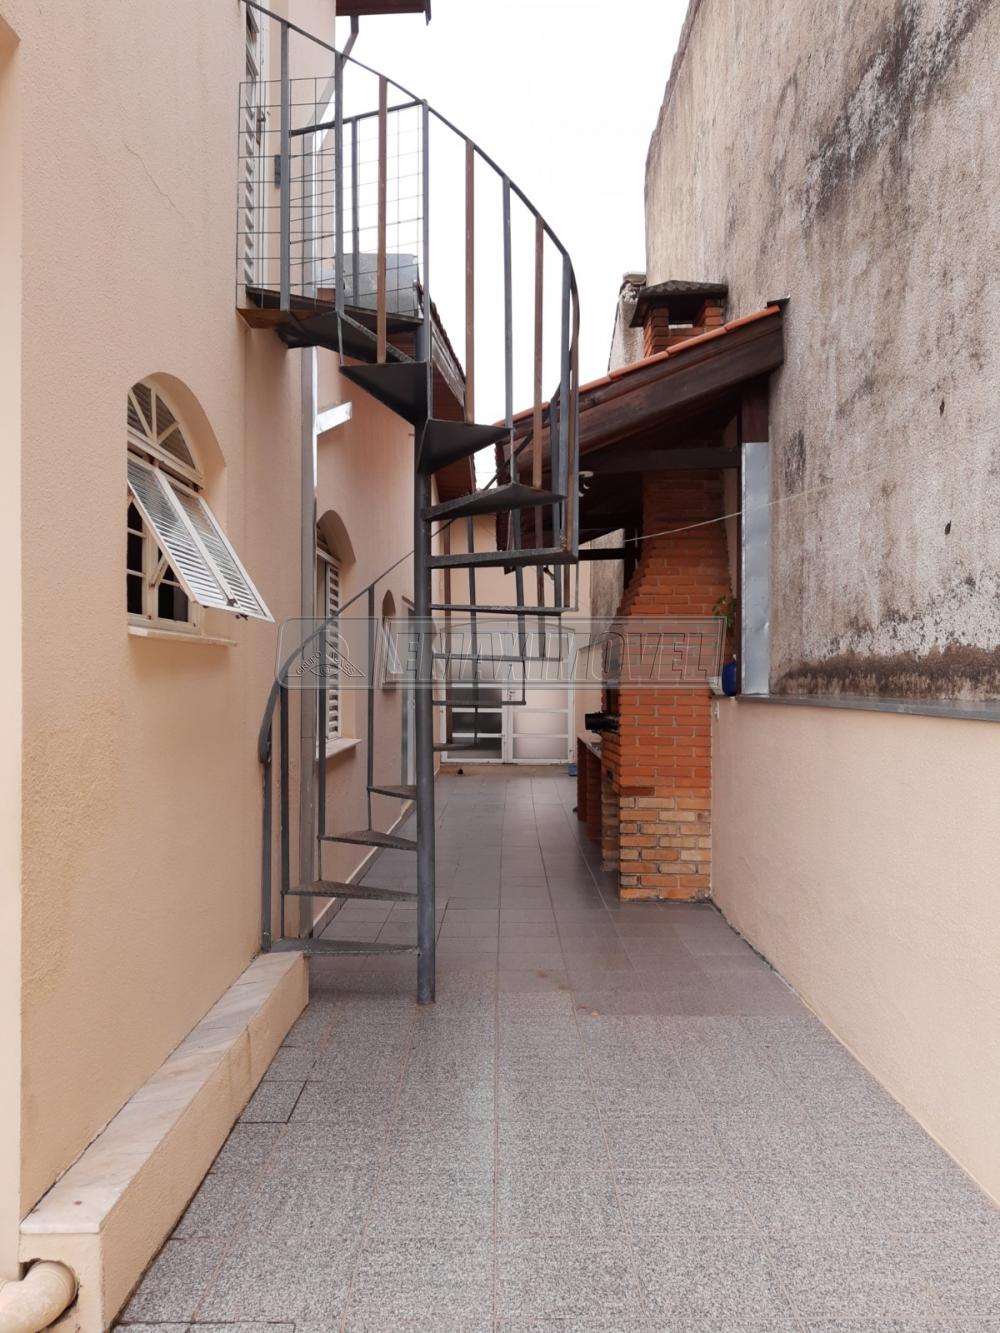 Comprar Casa / em Bairros em Sorocaba R$ 630.000,00 - Foto 27